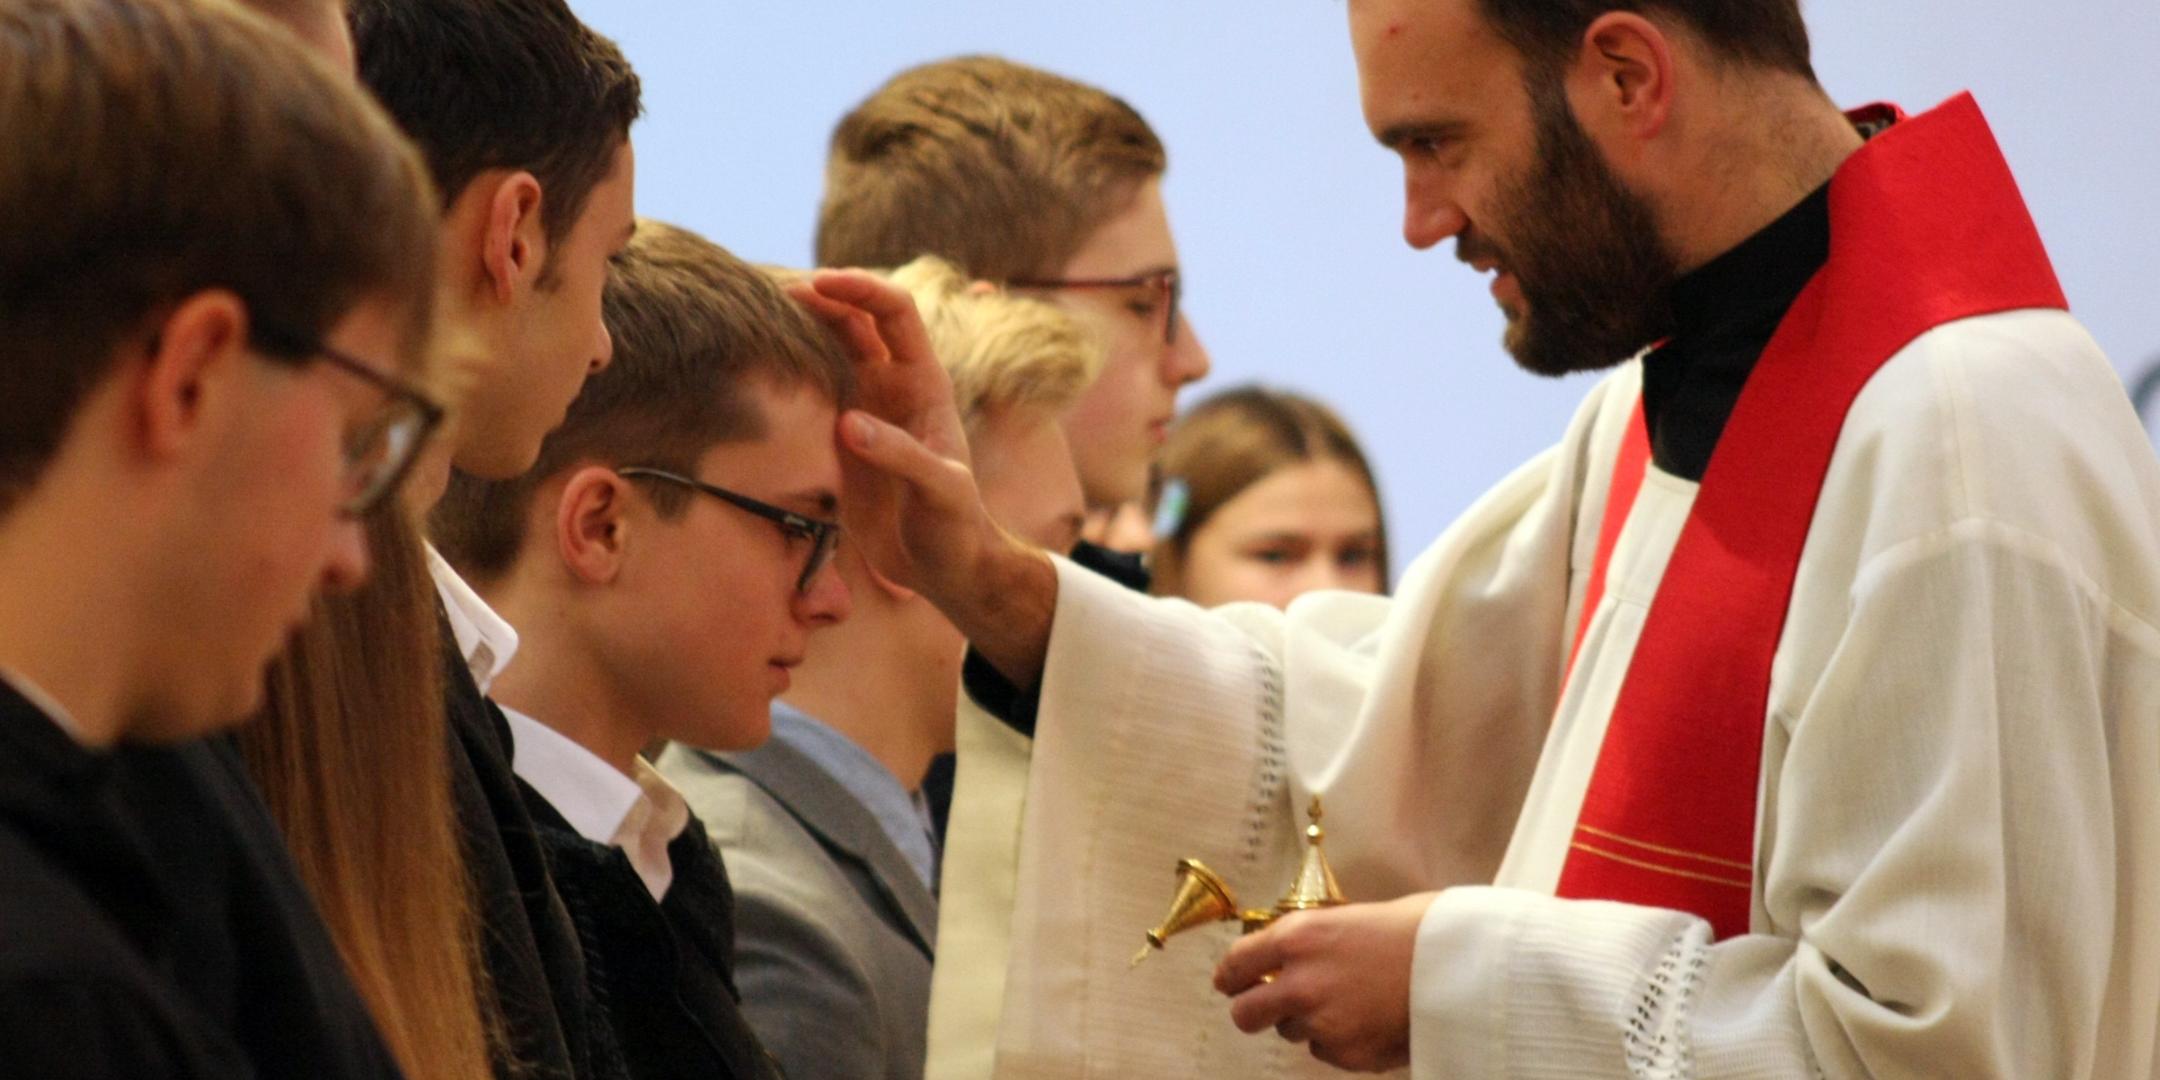 24 junge Menschen empfingen das Sakrament der Firmung in Herdorf durch Jugendpfarrer Dominic Lück.